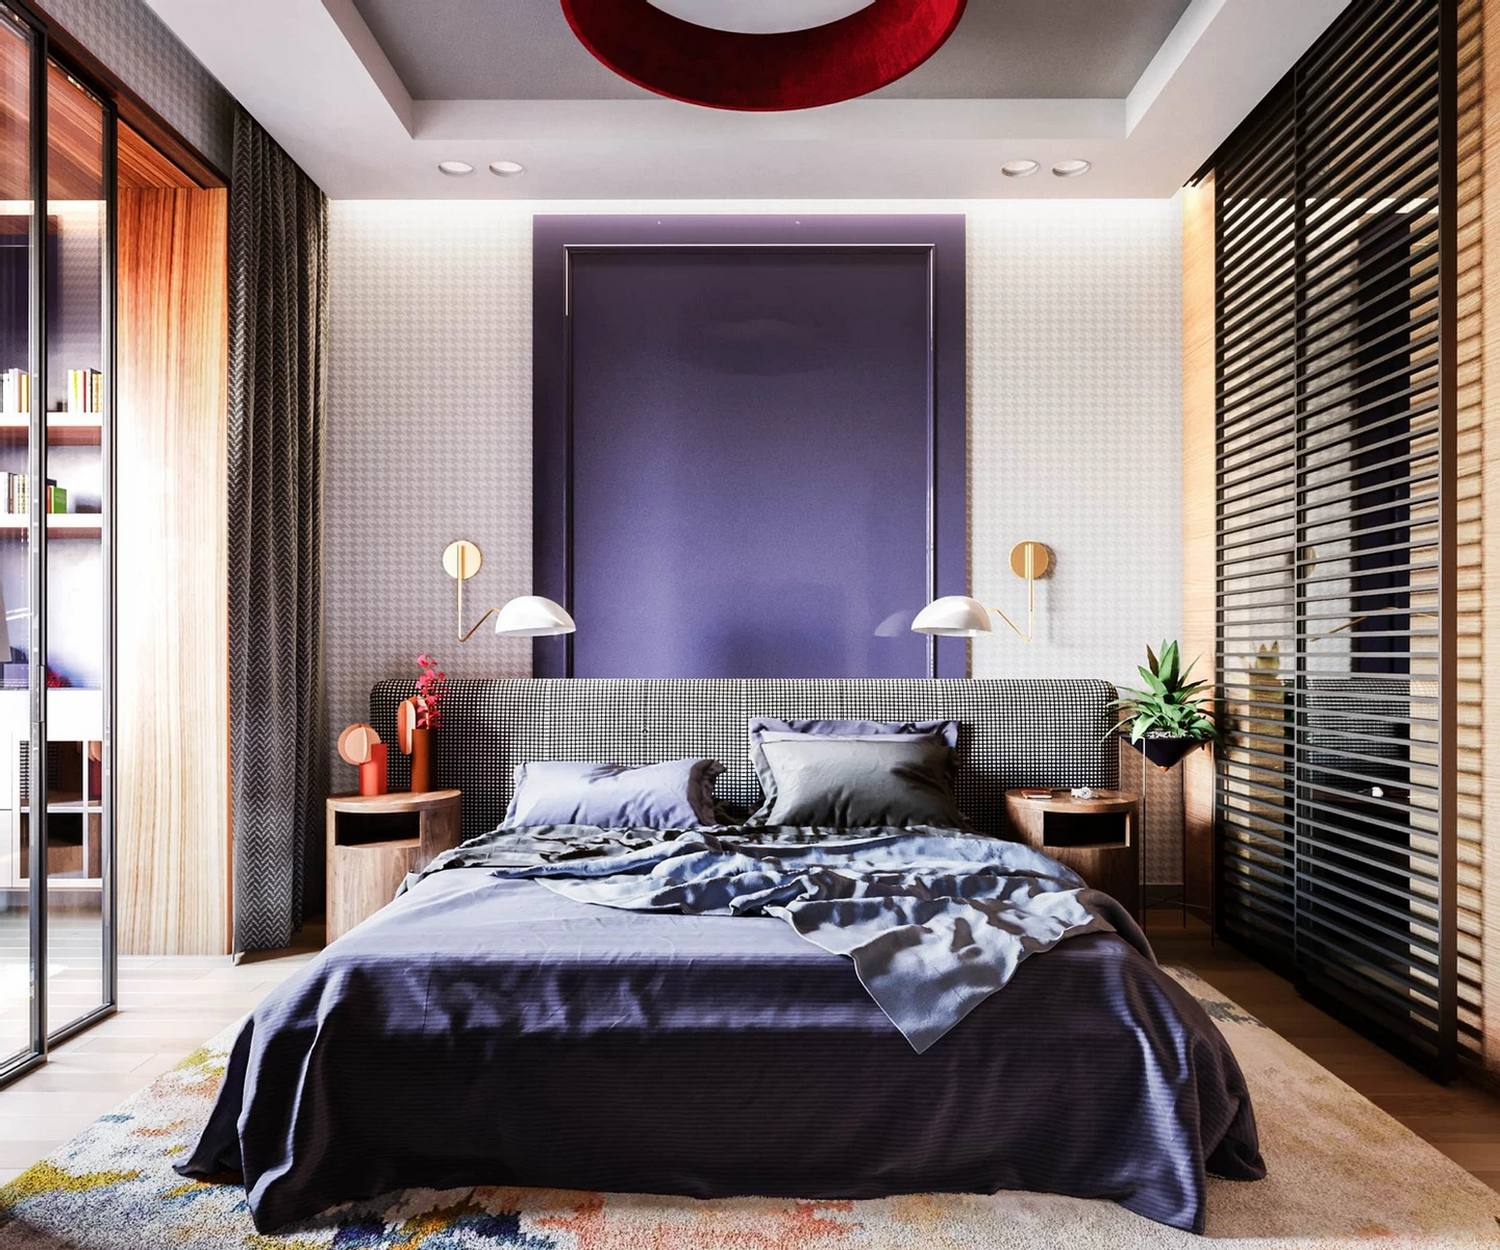 Phòng ngủ với tấm thảm trải sàn nhiều màu sắc, bức tường đầu giường và chăn nệm sử dụng màu tím quyền lực cùng hệ thống đèn ốp trần, đèn gắn tường tiện nghi.